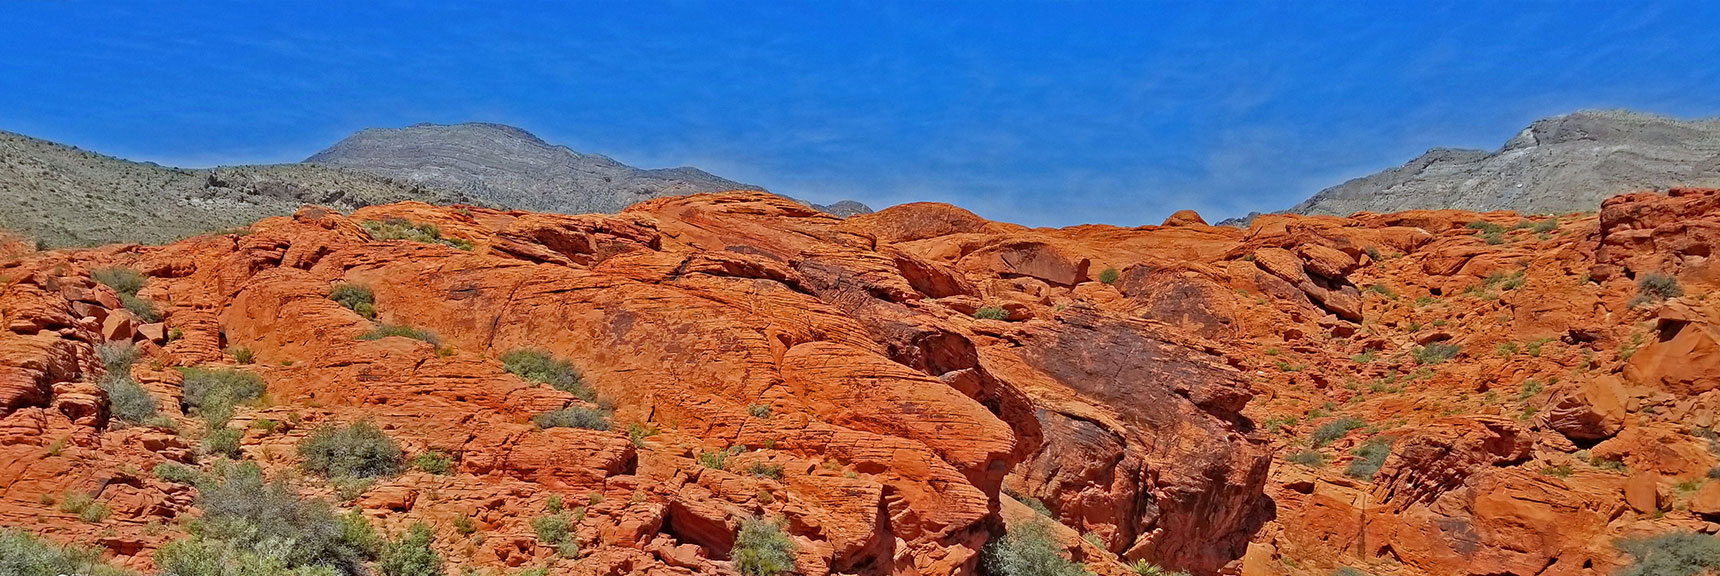 | Little Red Rock Las Vegas, Nevada, Near La Madre Mountains Wilderness